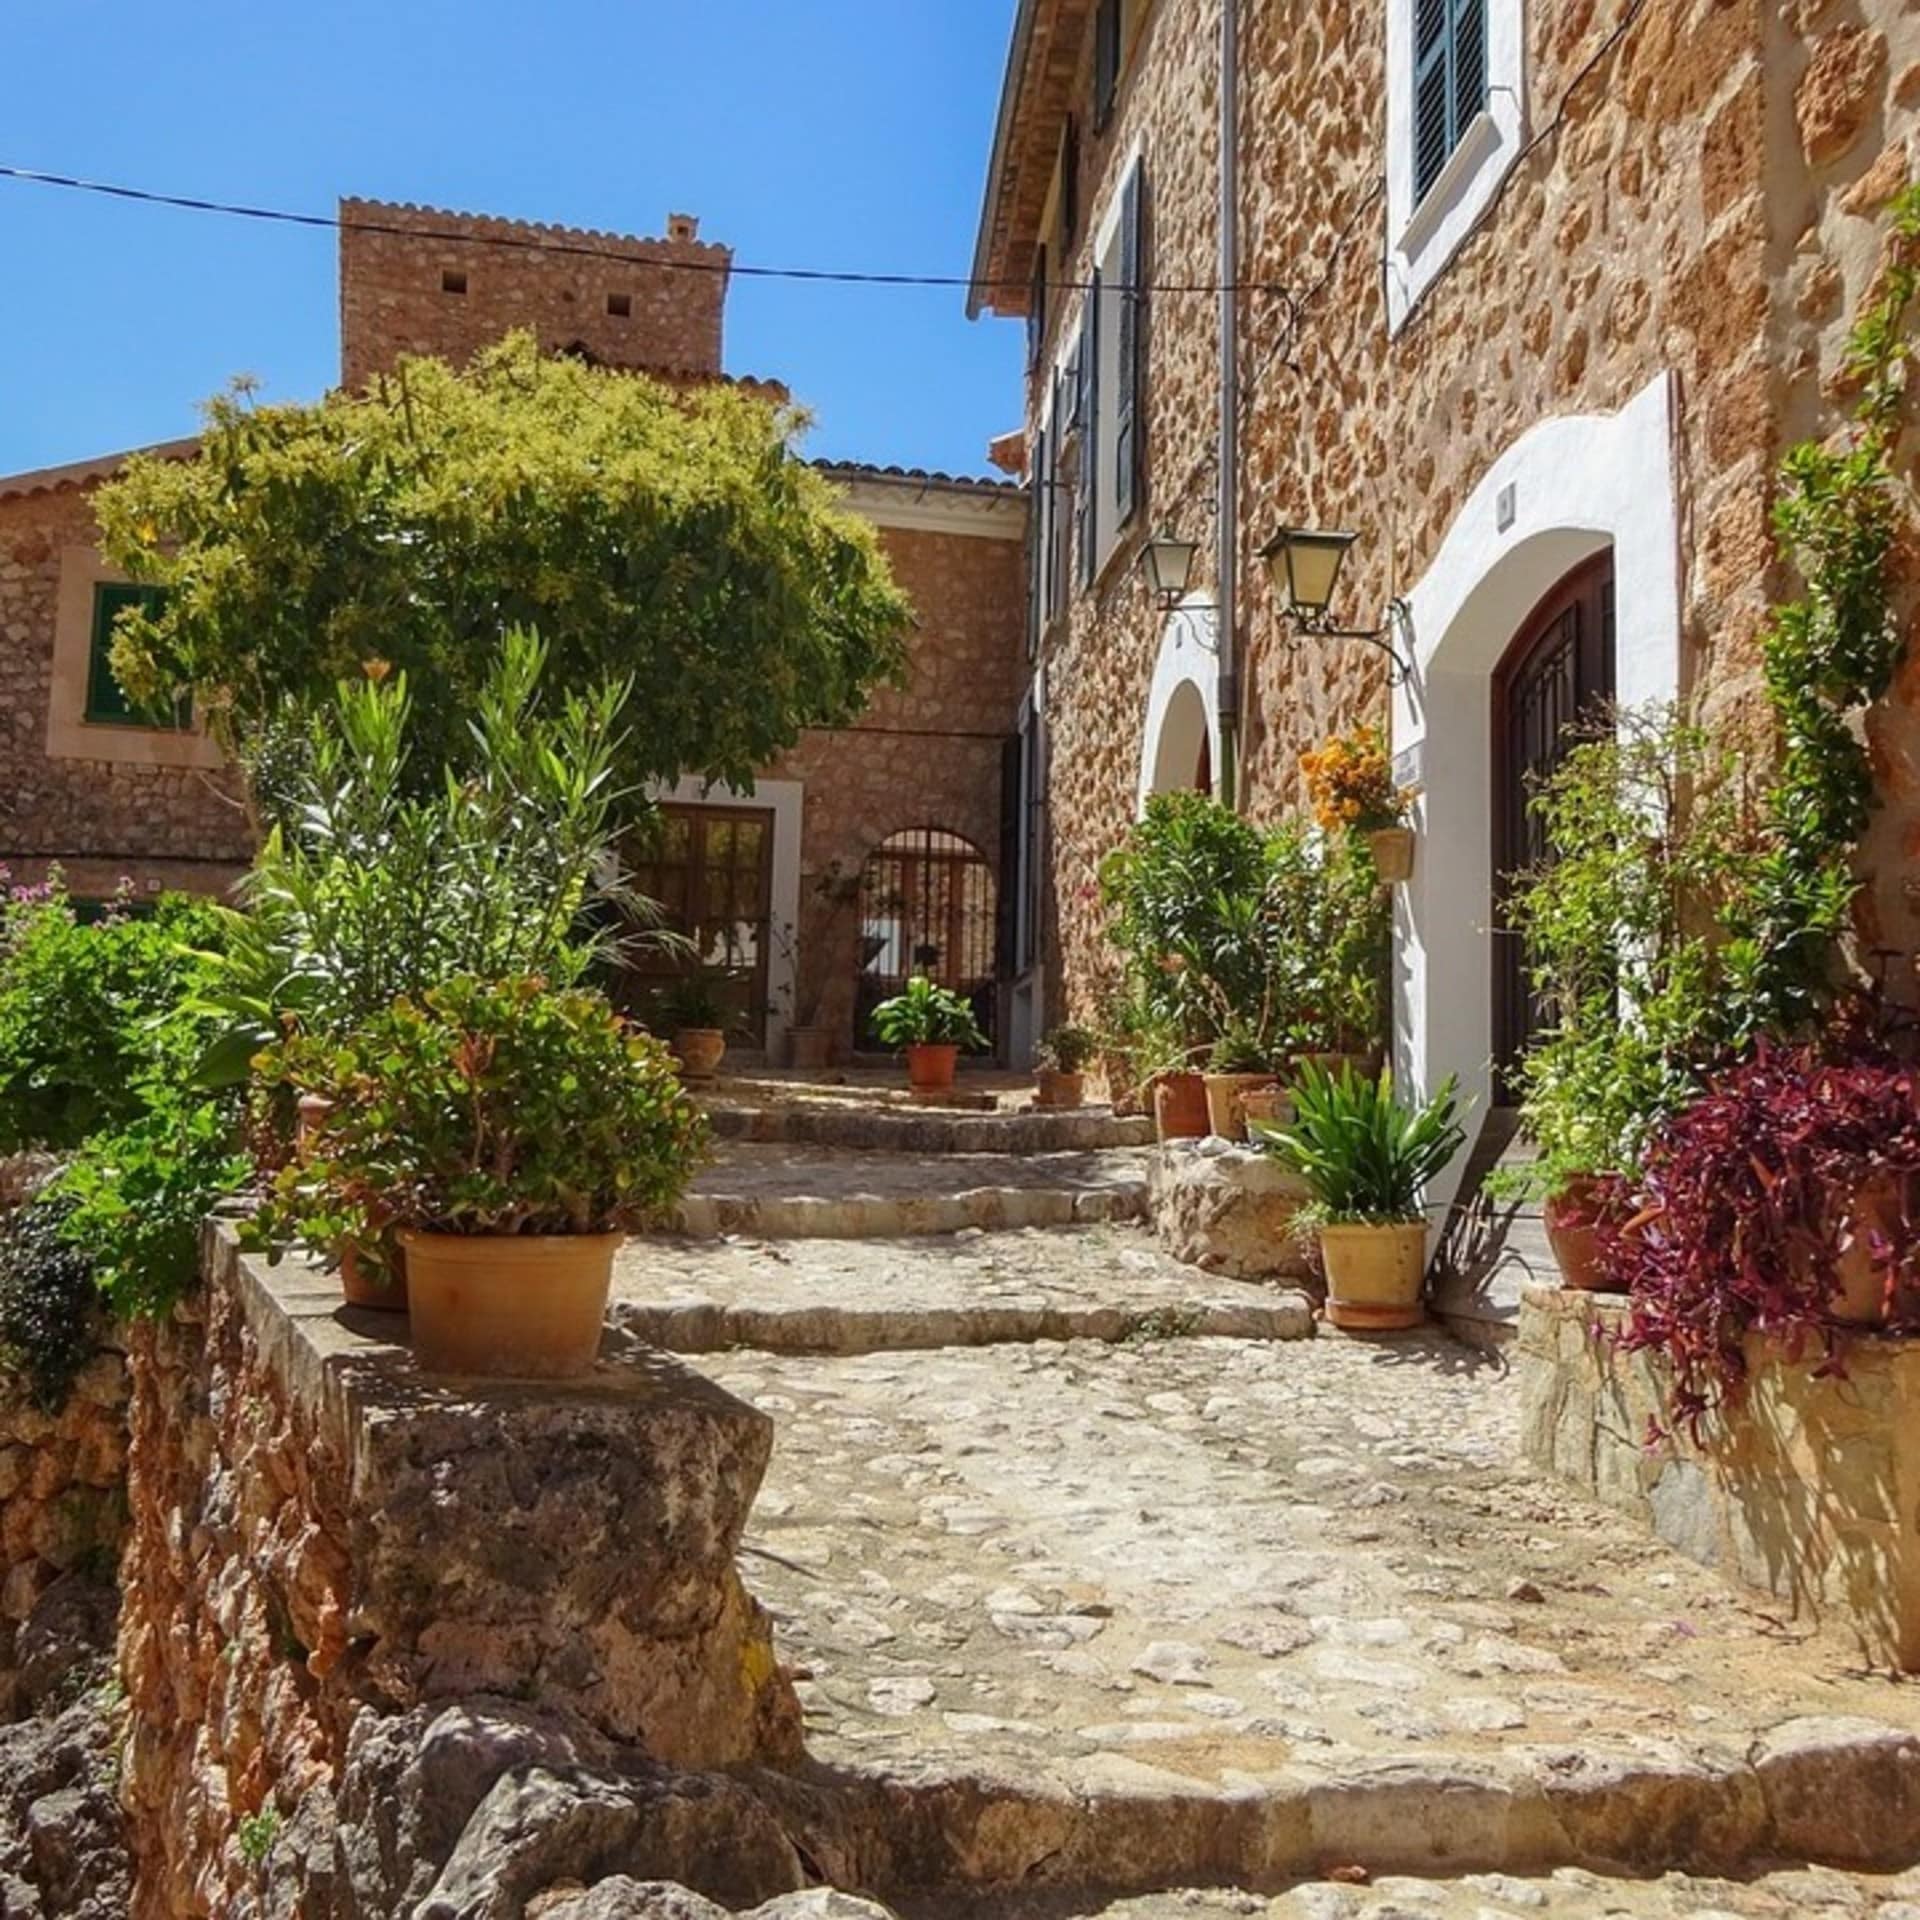 Die rustikalen Hausfassaden und die Blumenkübel verleihen mediterranes Flair